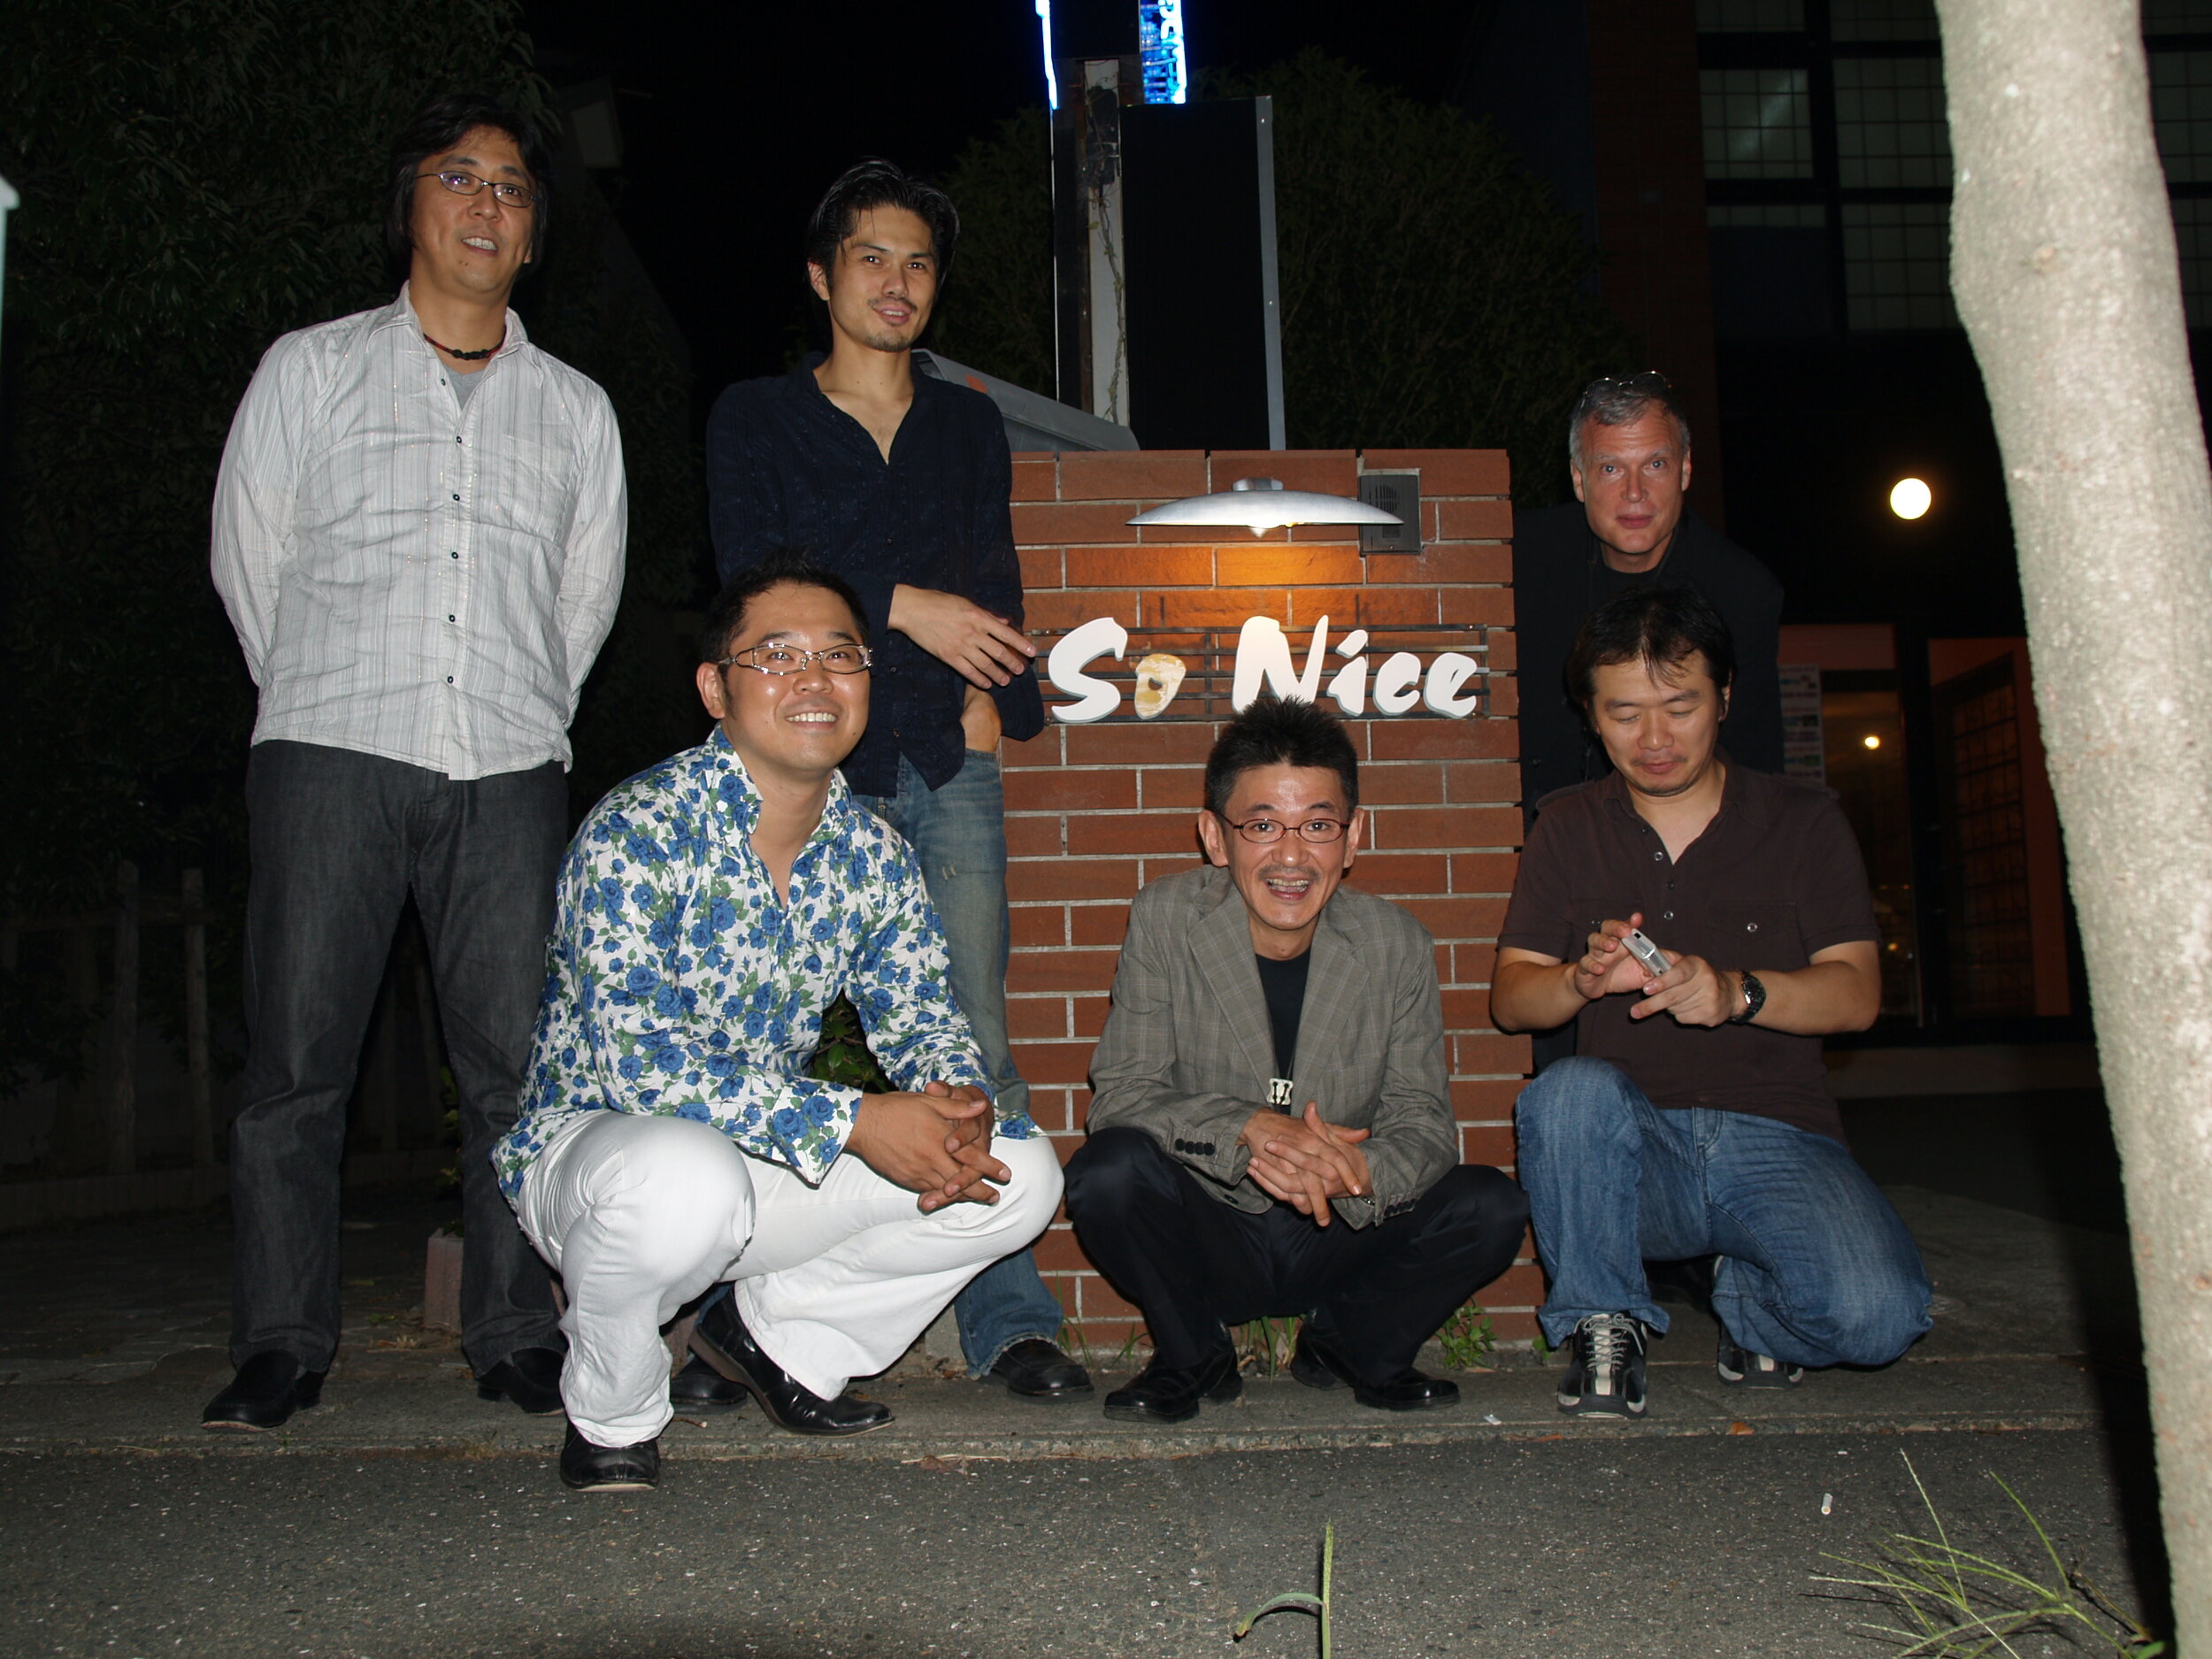 band posed at So Nice club.JPG